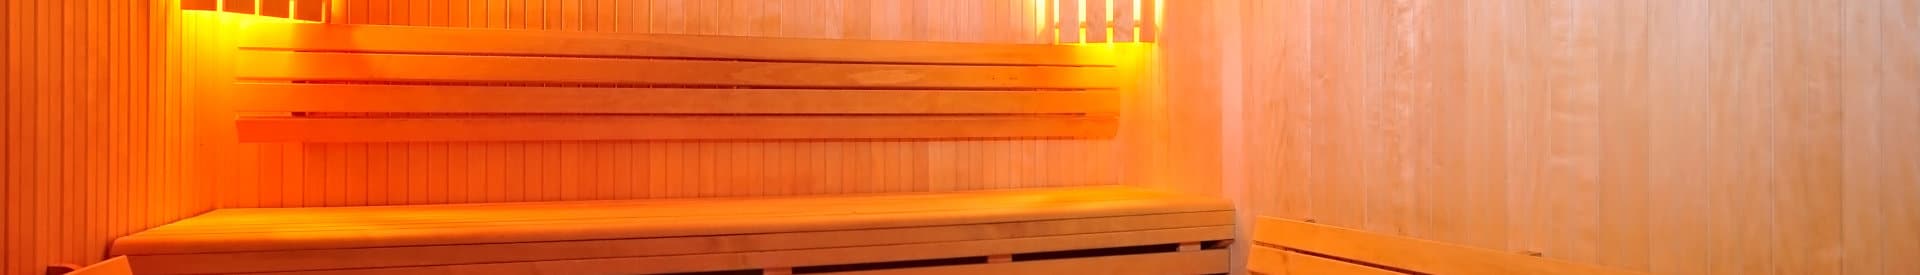 meesteres genetisch Wantrouwen Finse sauna kopen: Soorten sauna's en hun prijzen